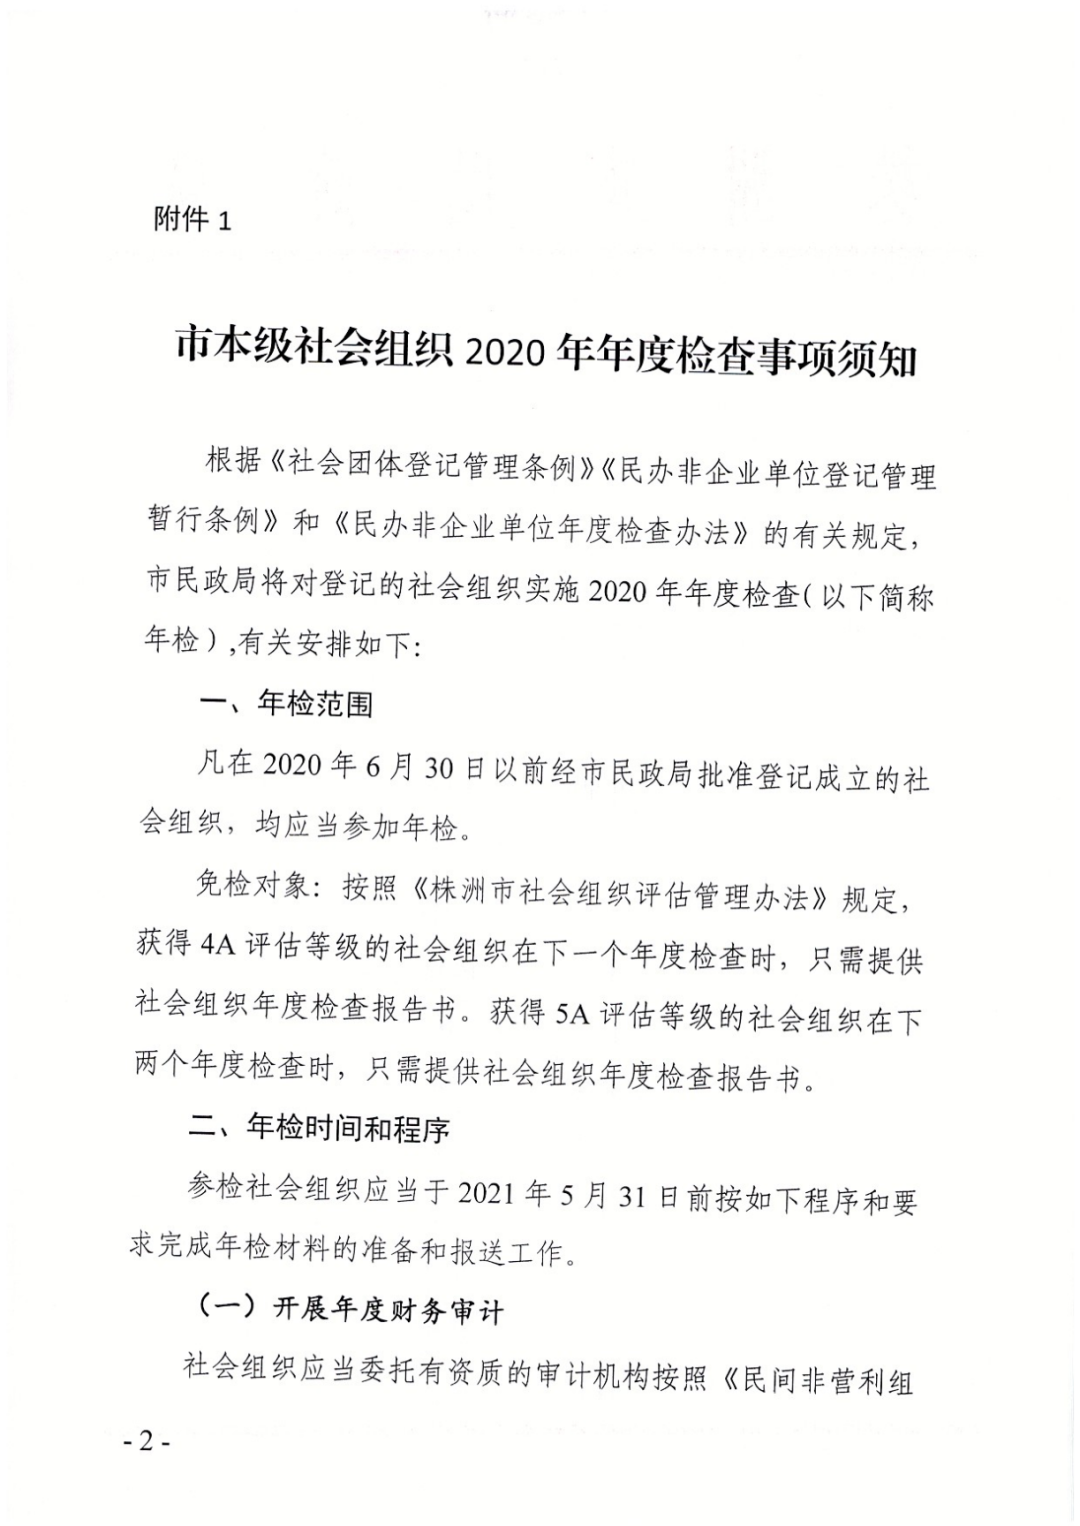 株洲市民政局关于开展社会组织2020年度检查工作的通知